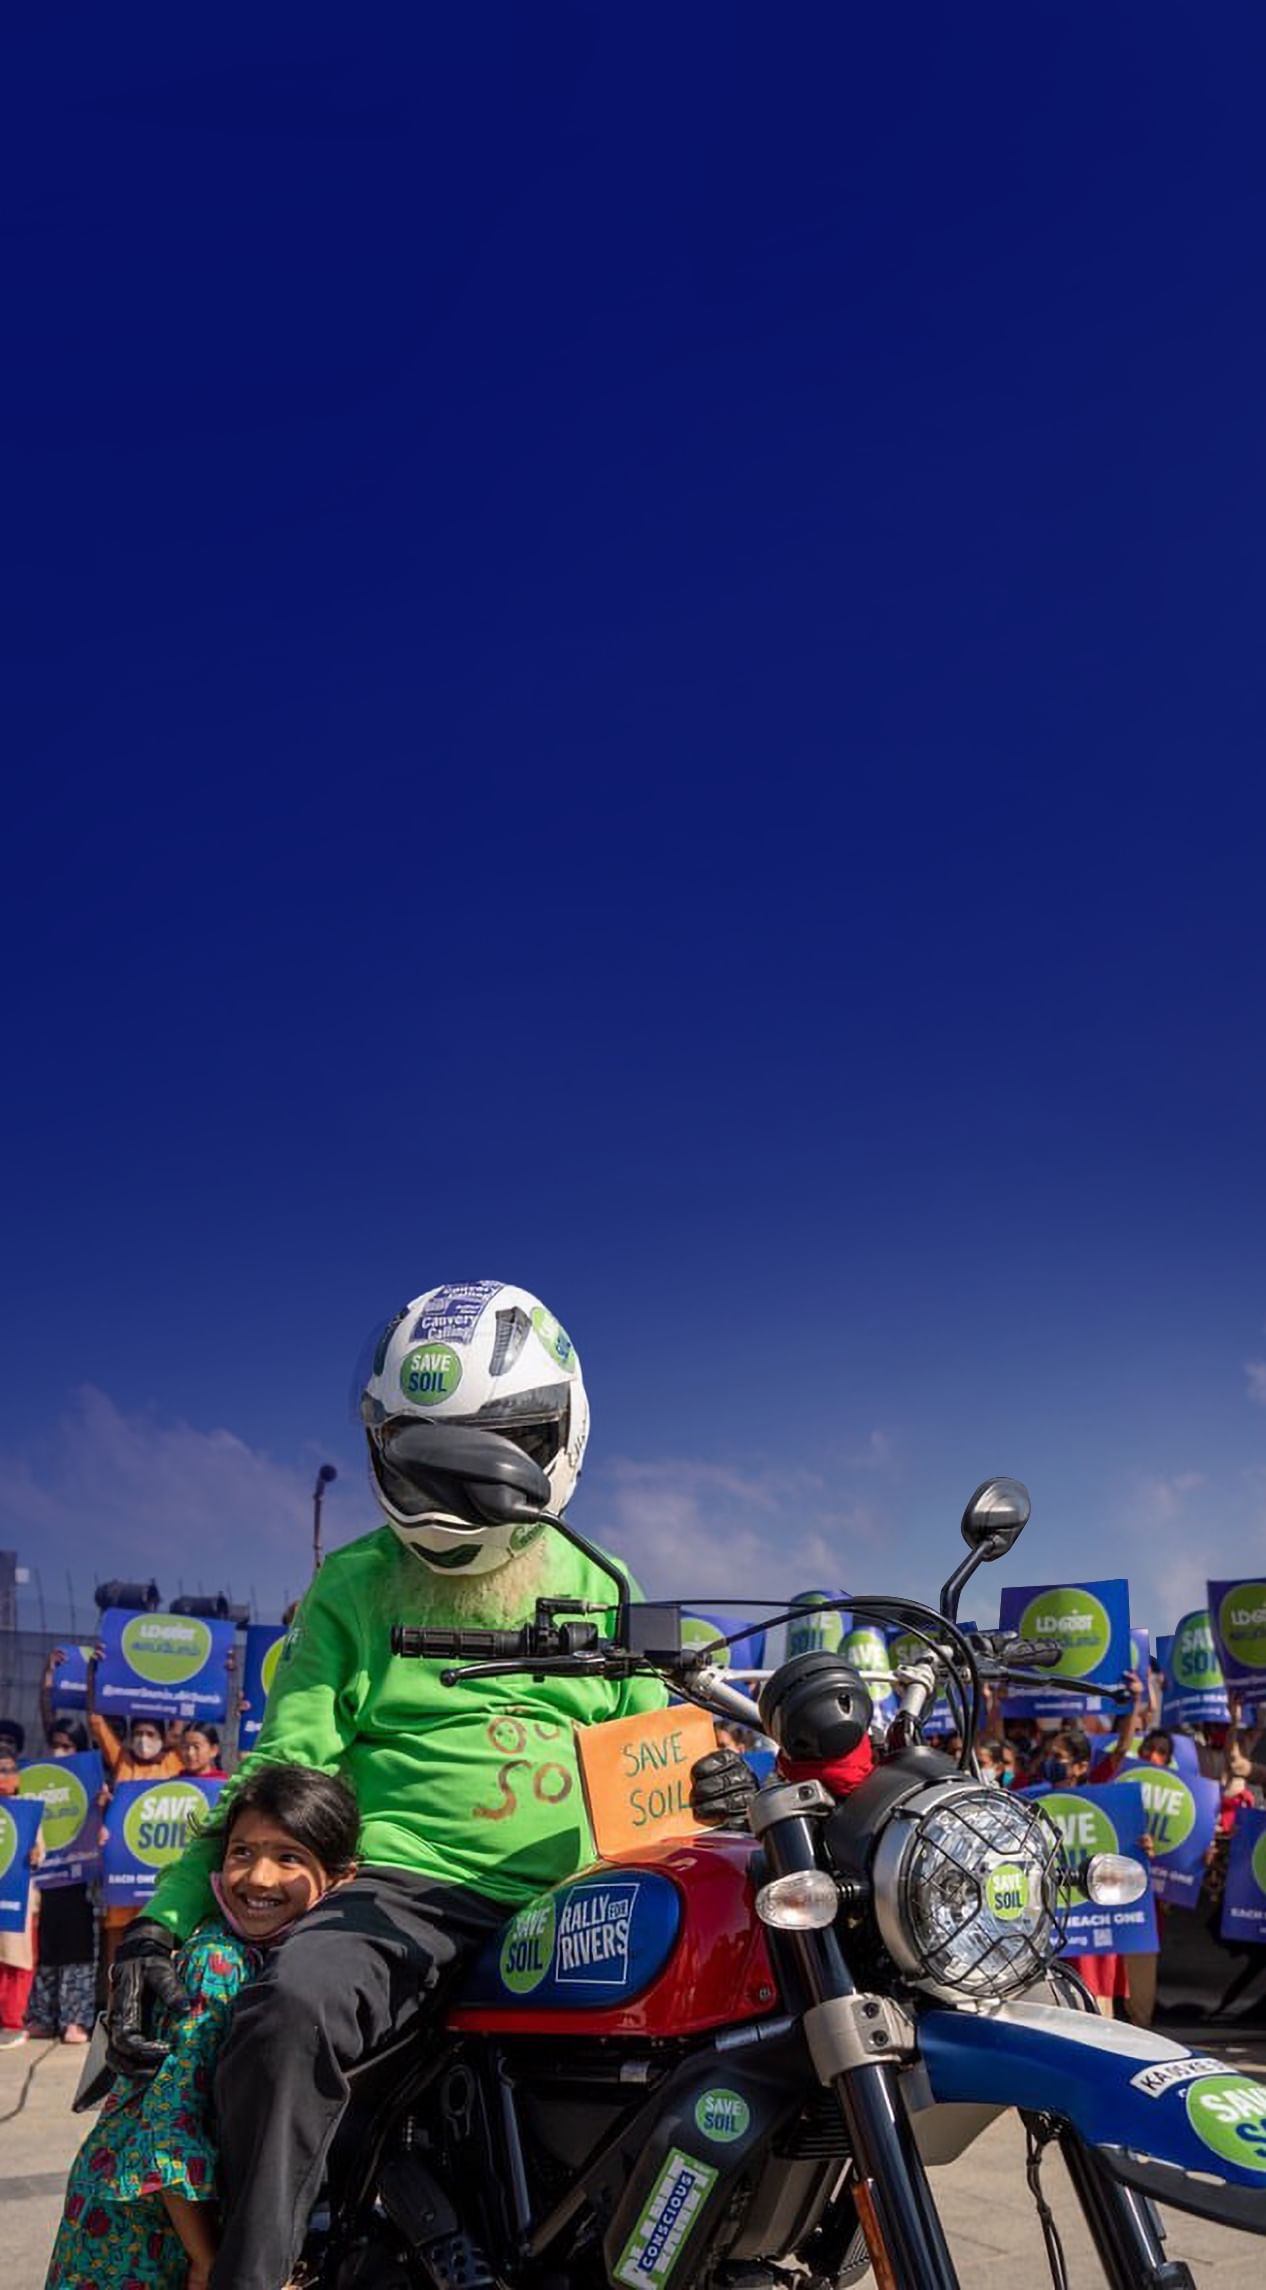 Sadhguru de moto com o cartaz Salve o Solo, junto a uma criança